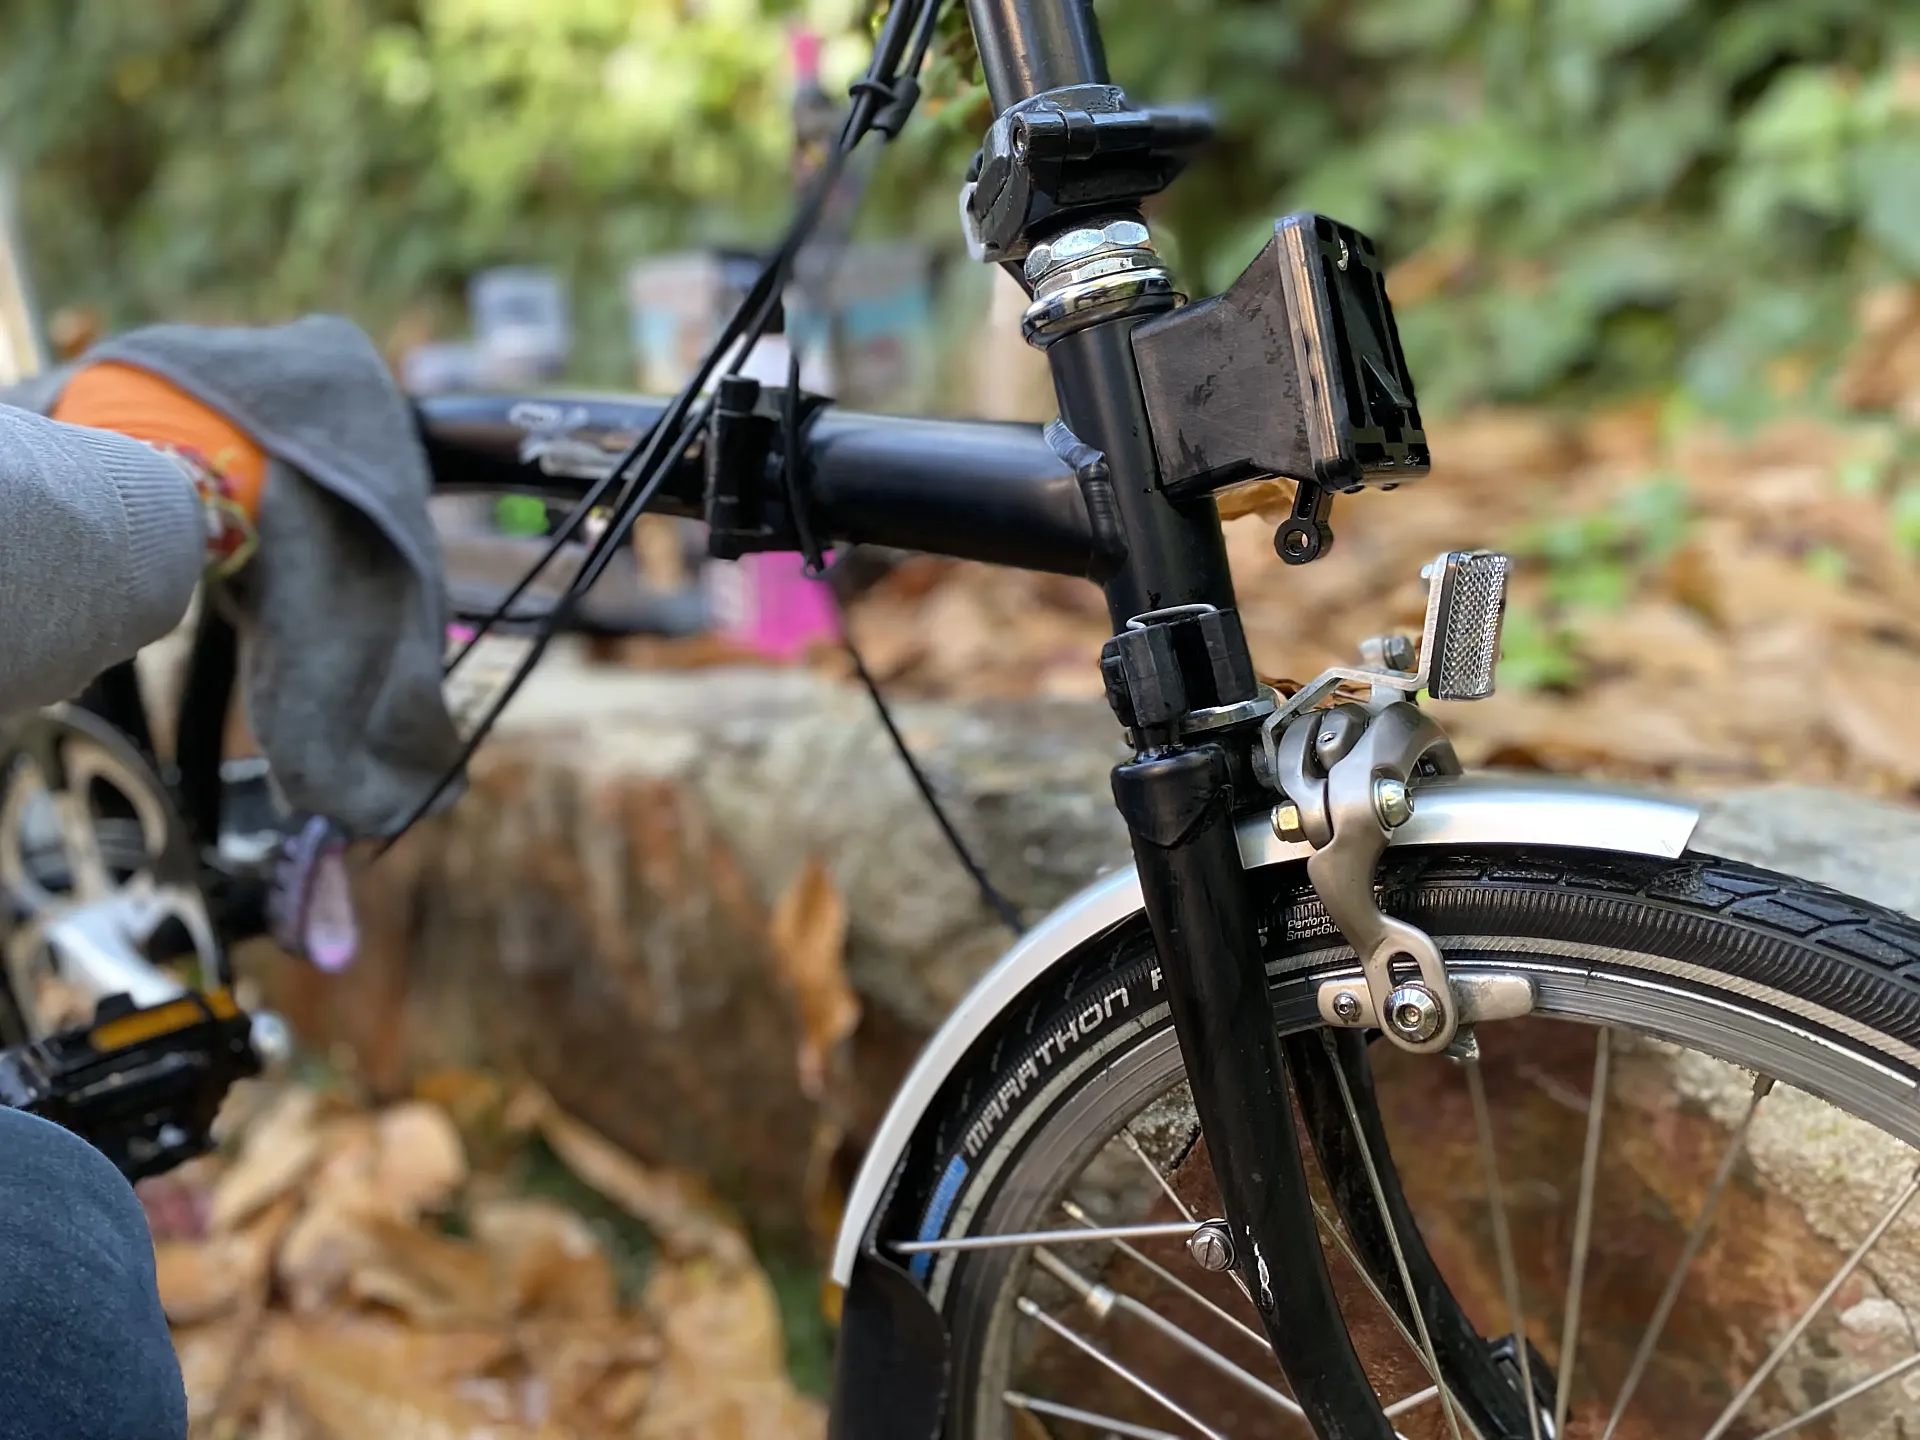 Cualquier bicicleta agrade que la cuides, y el Kit de Muc-Off parece perfecto para hacerlo.